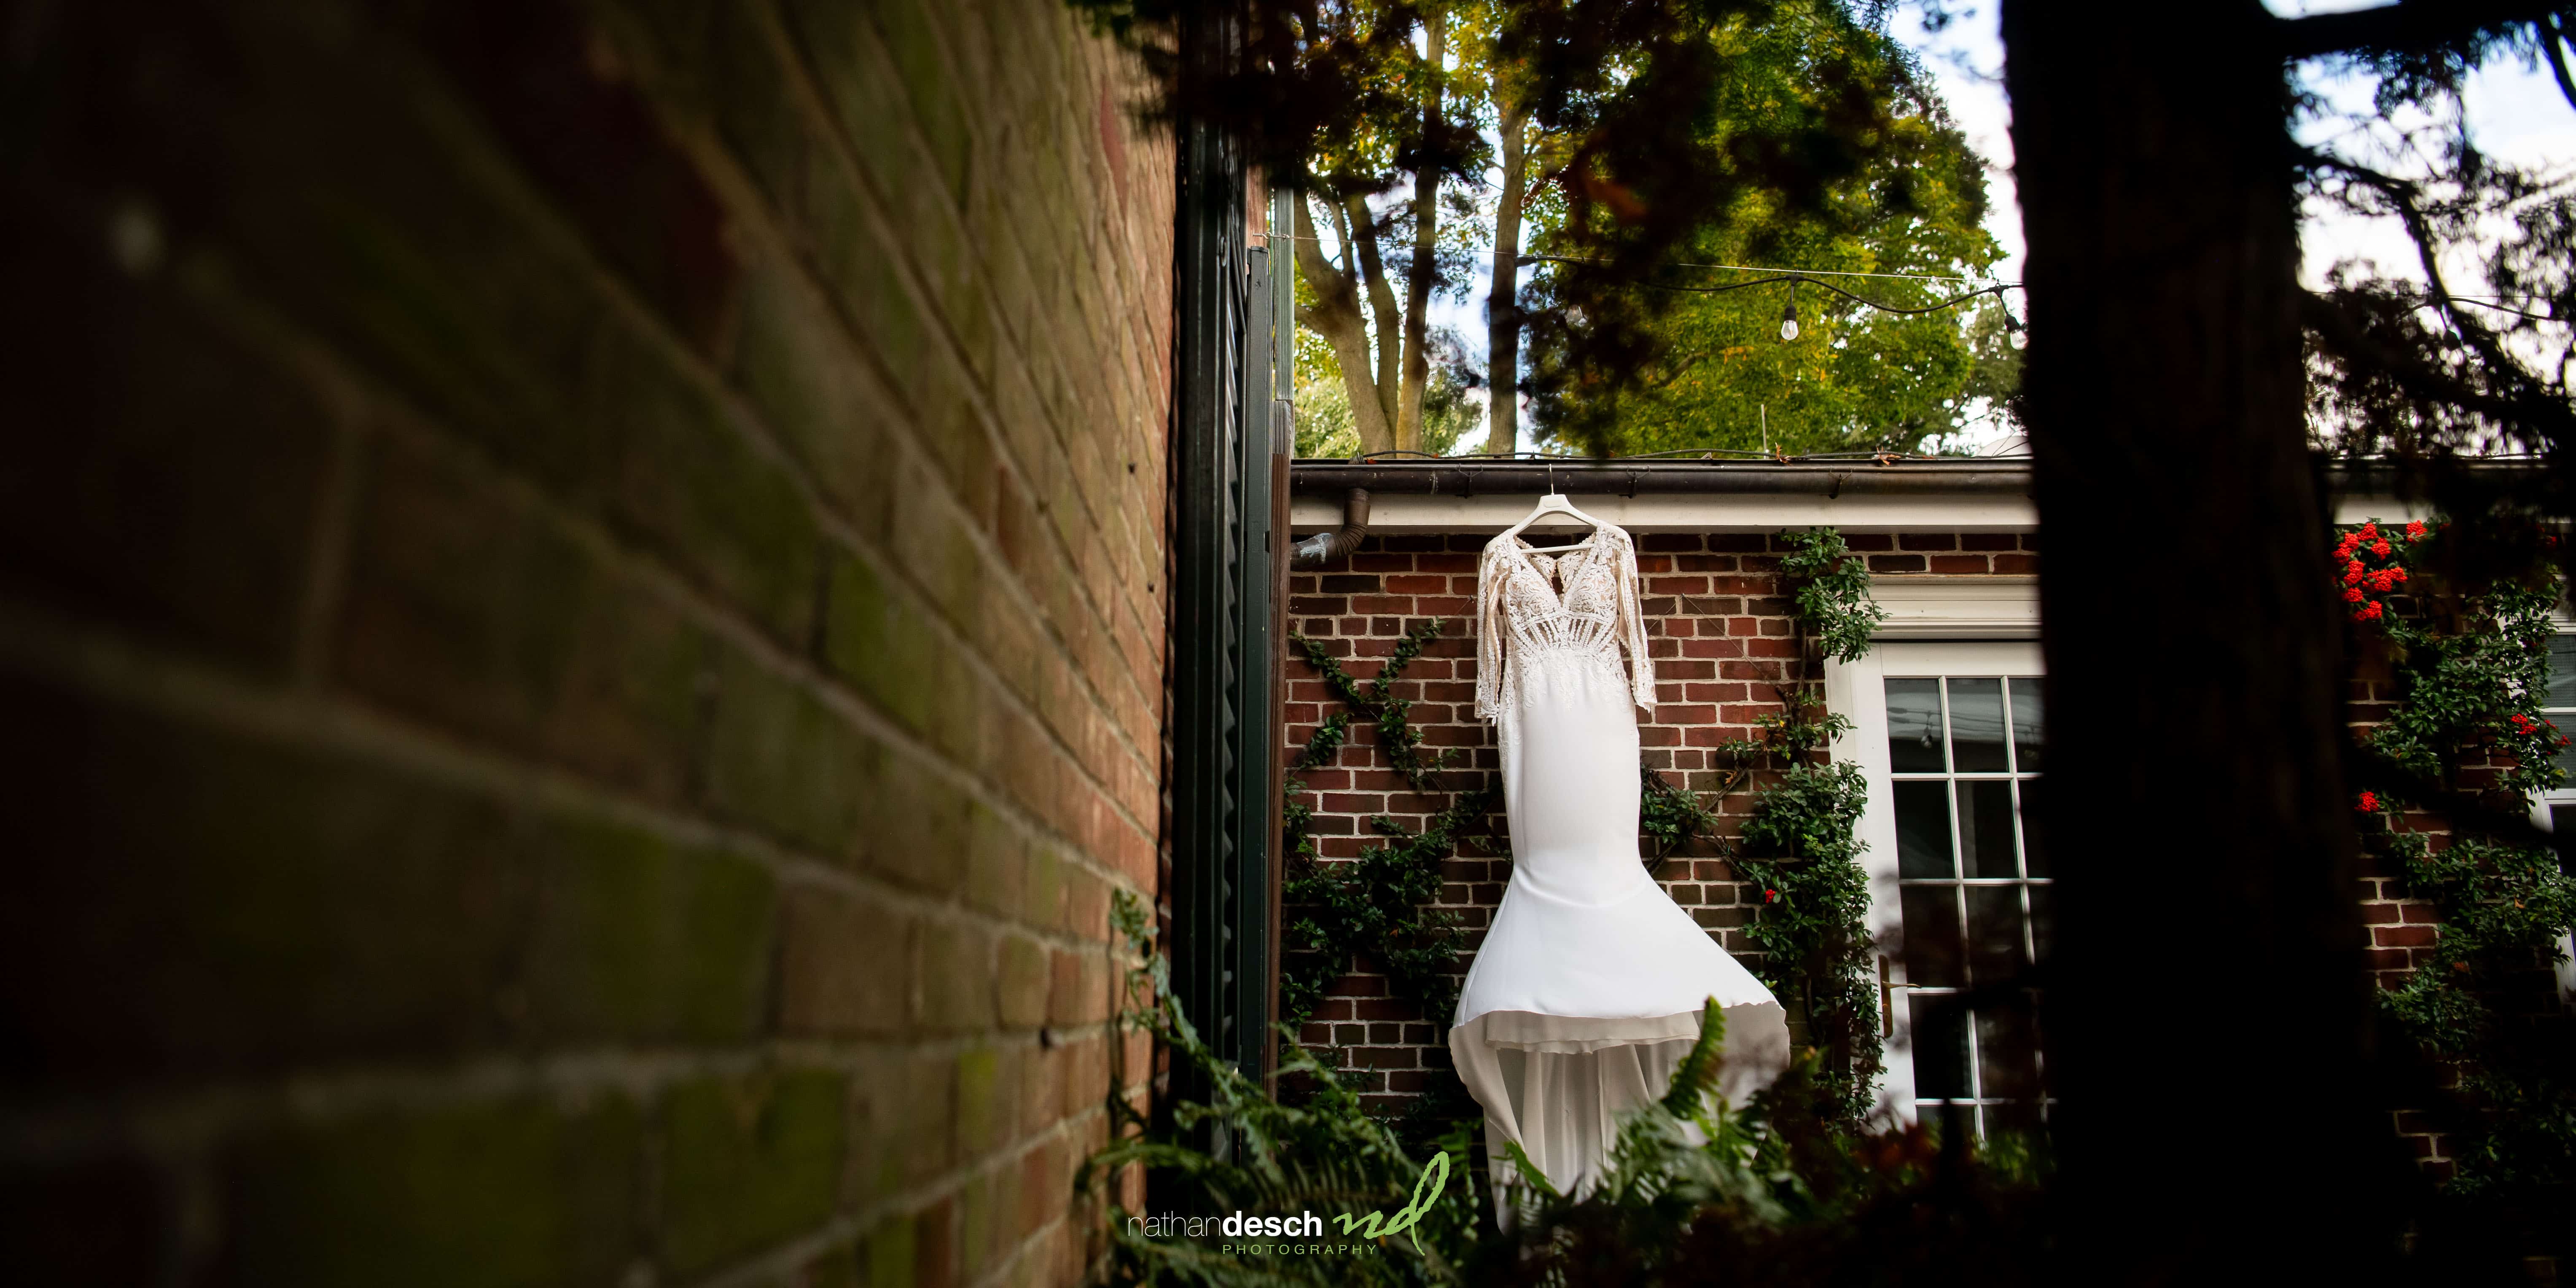 brides dress hanging outside